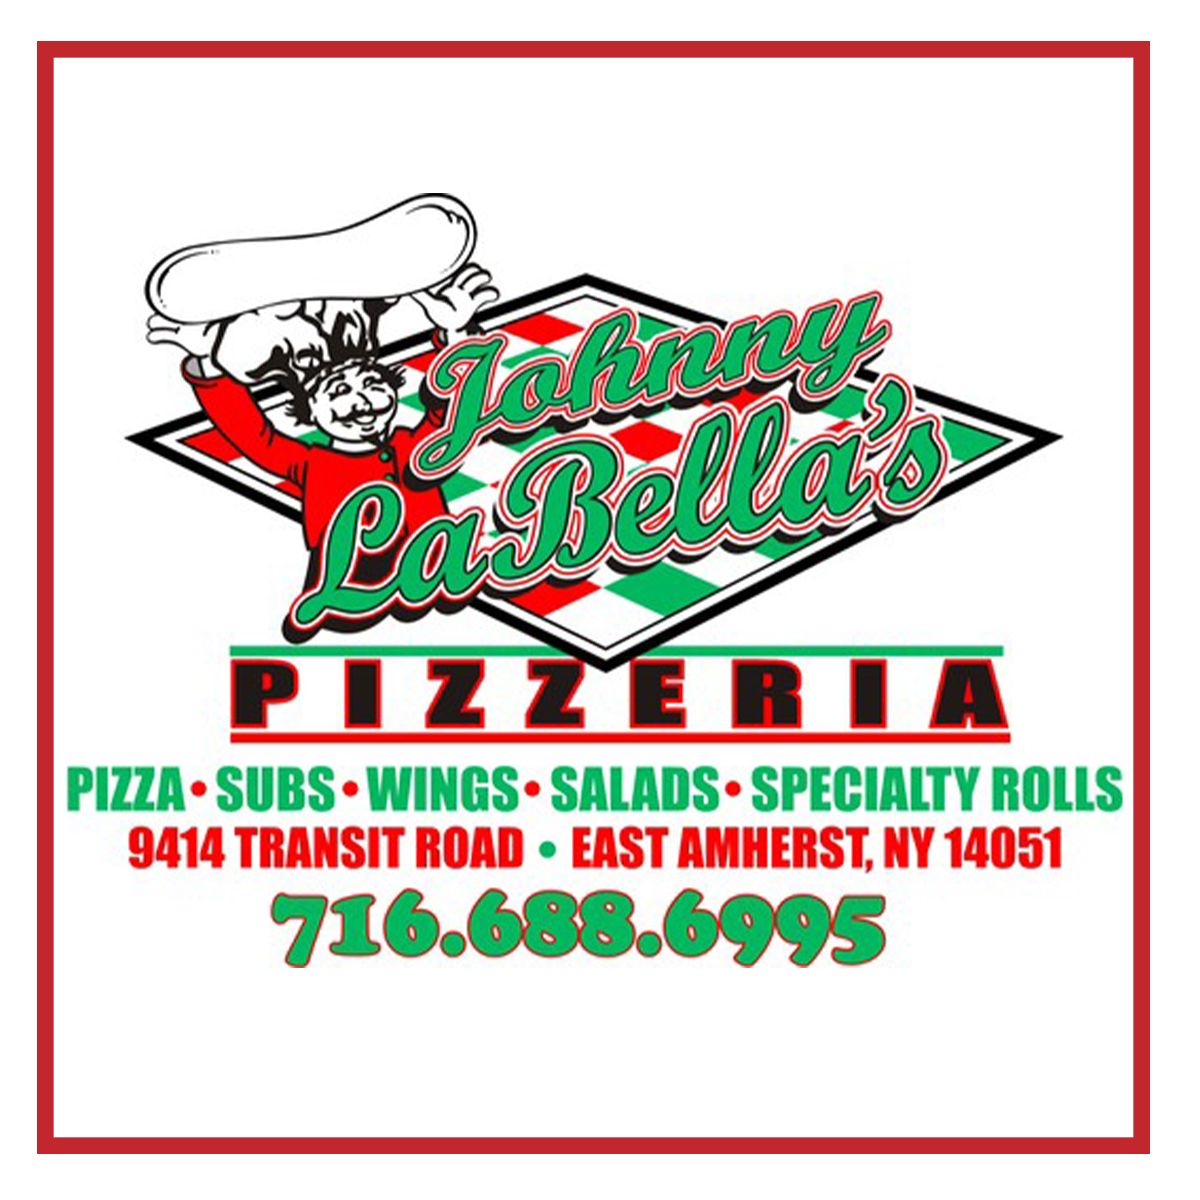 Johnny La Bella's Pizzeria